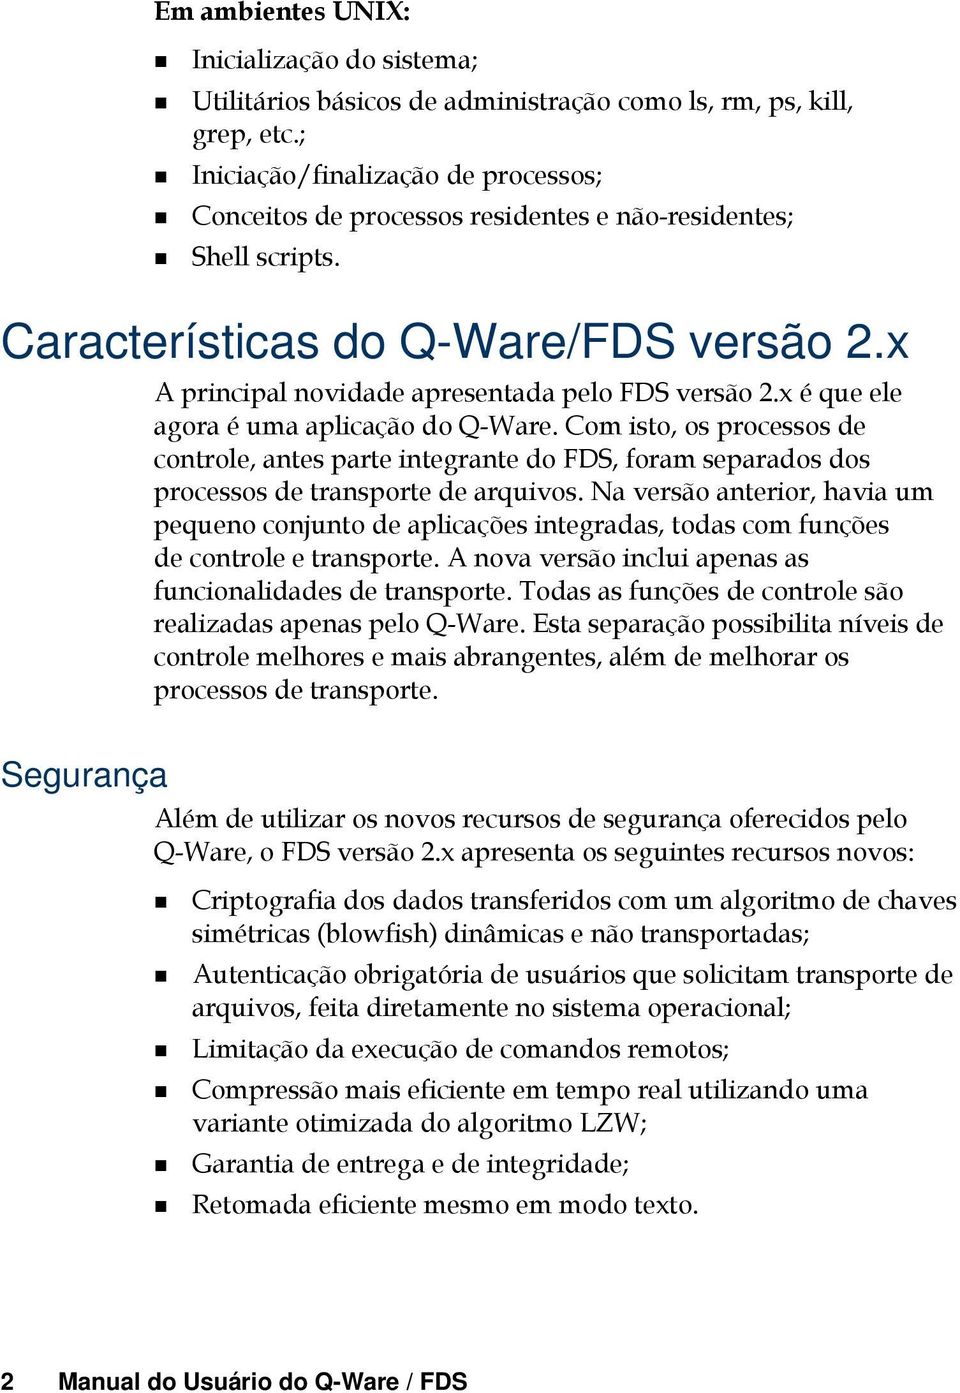 x Segurança A principal novidade apresentada pelo FDS versão 2.x é que ele agora é uma aplicação do Q-Ware.